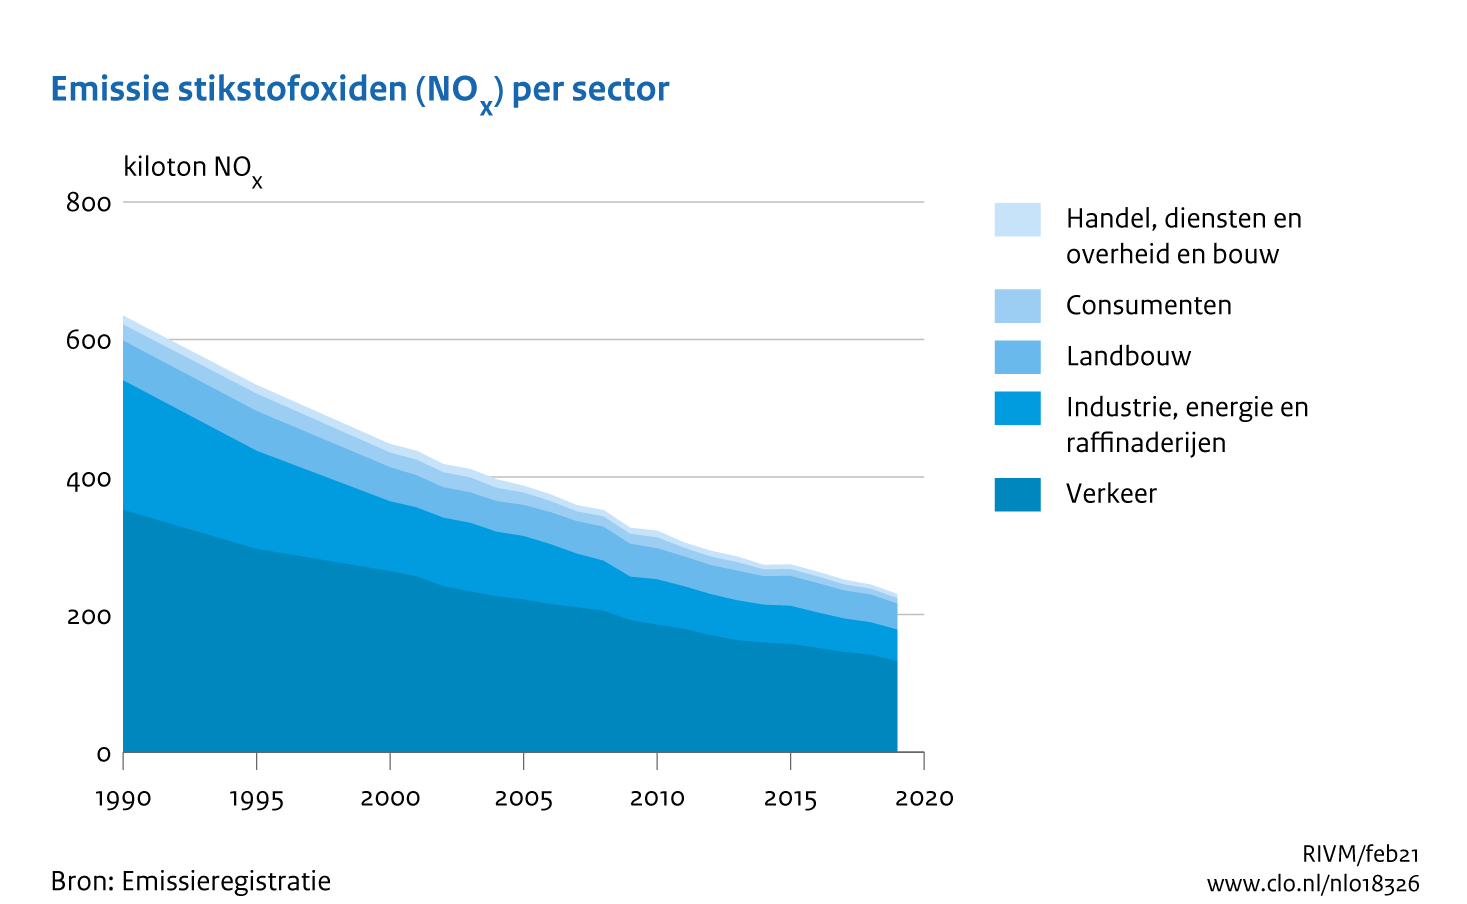 Figuur NOx-emissie per sector. In de rest van de tekst wordt deze figuur uitgebreider uitgelegd.